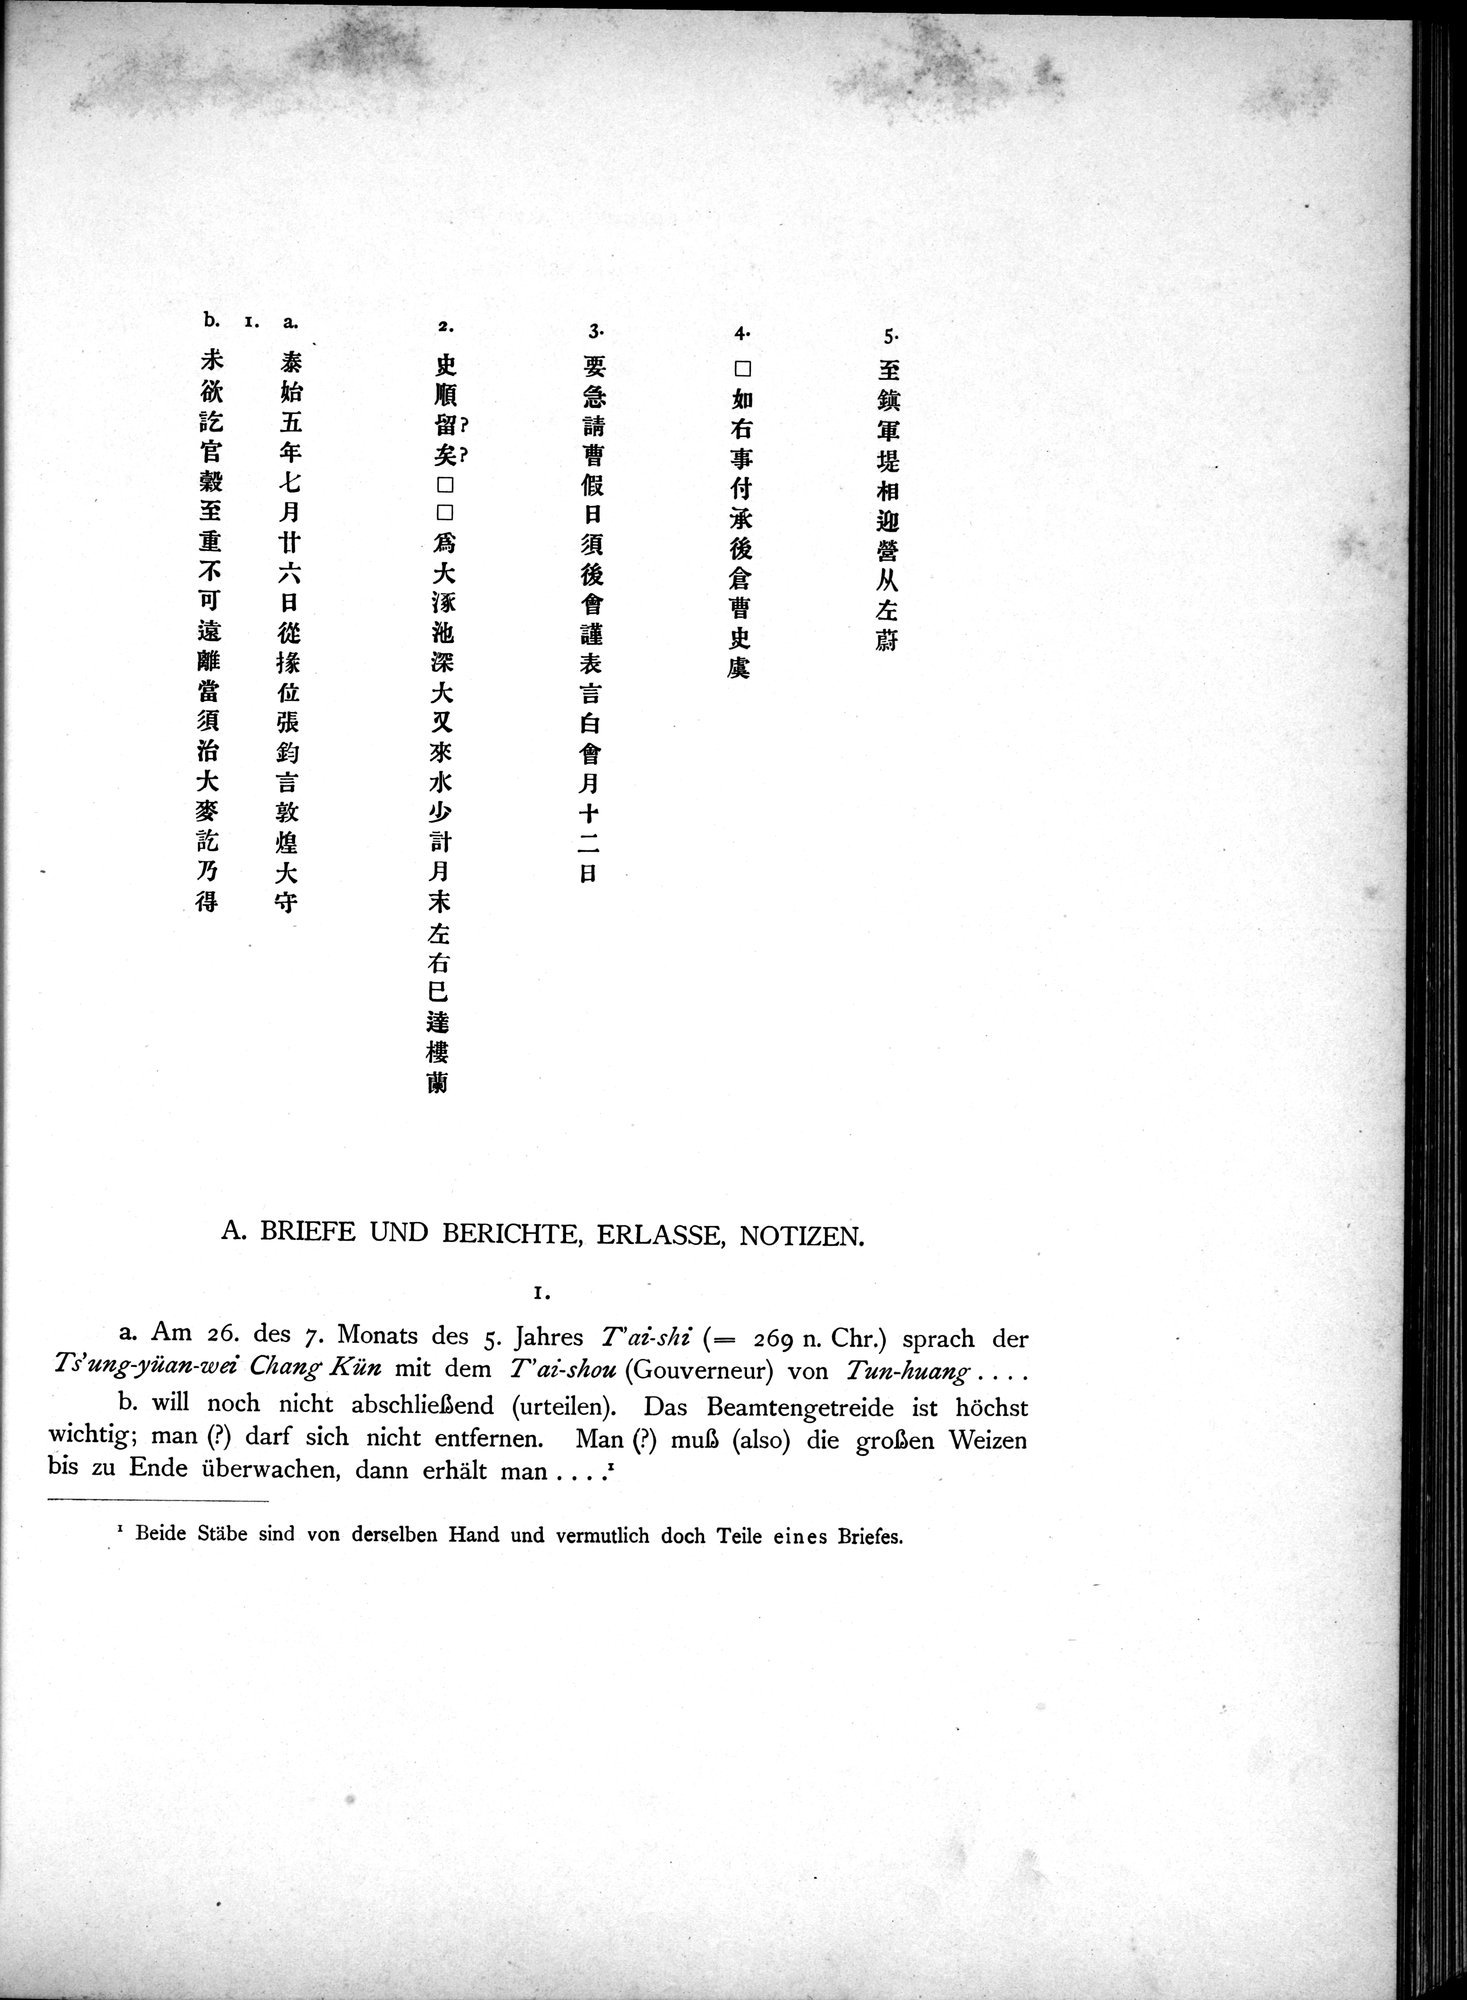 Die Chinesischen Handschriften- und sonstigen Kleinfunde Sven Hedins in Lou-lan : vol.1 / Page 141 (Grayscale High Resolution Image)